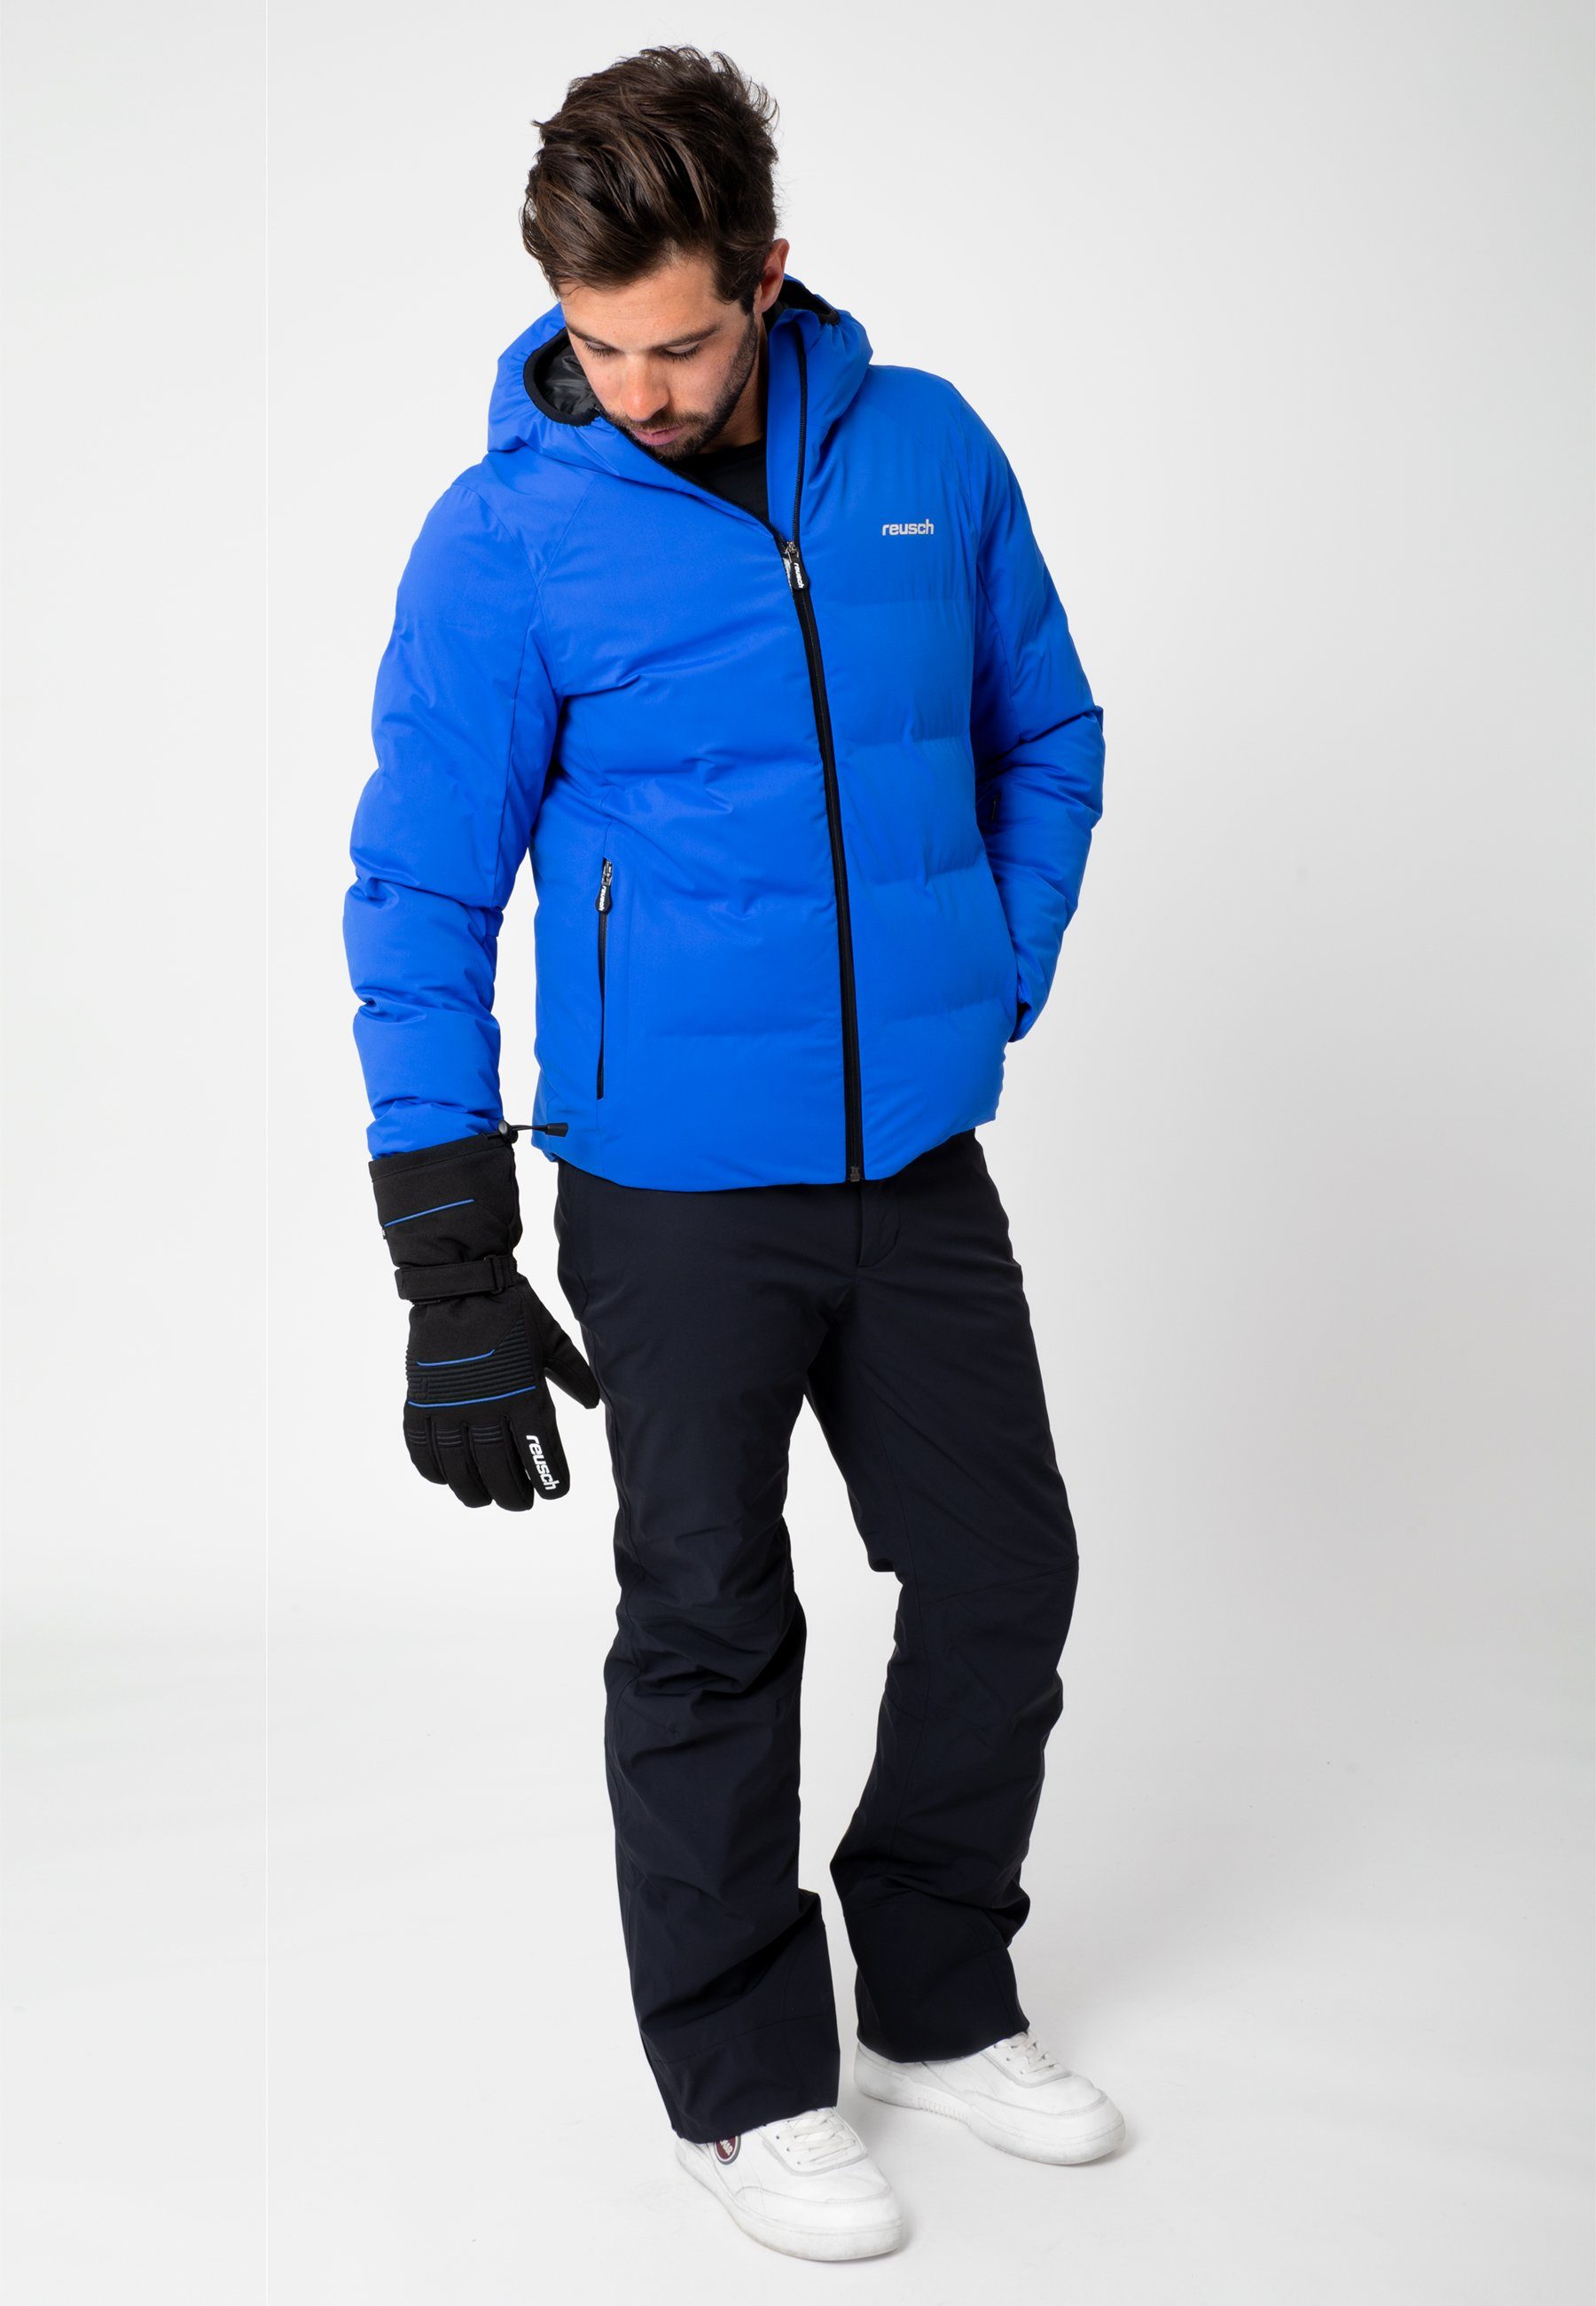 Reusch Skihandschuhe Crosby R-TEX® Design in blau-schwarz XT sportlichem